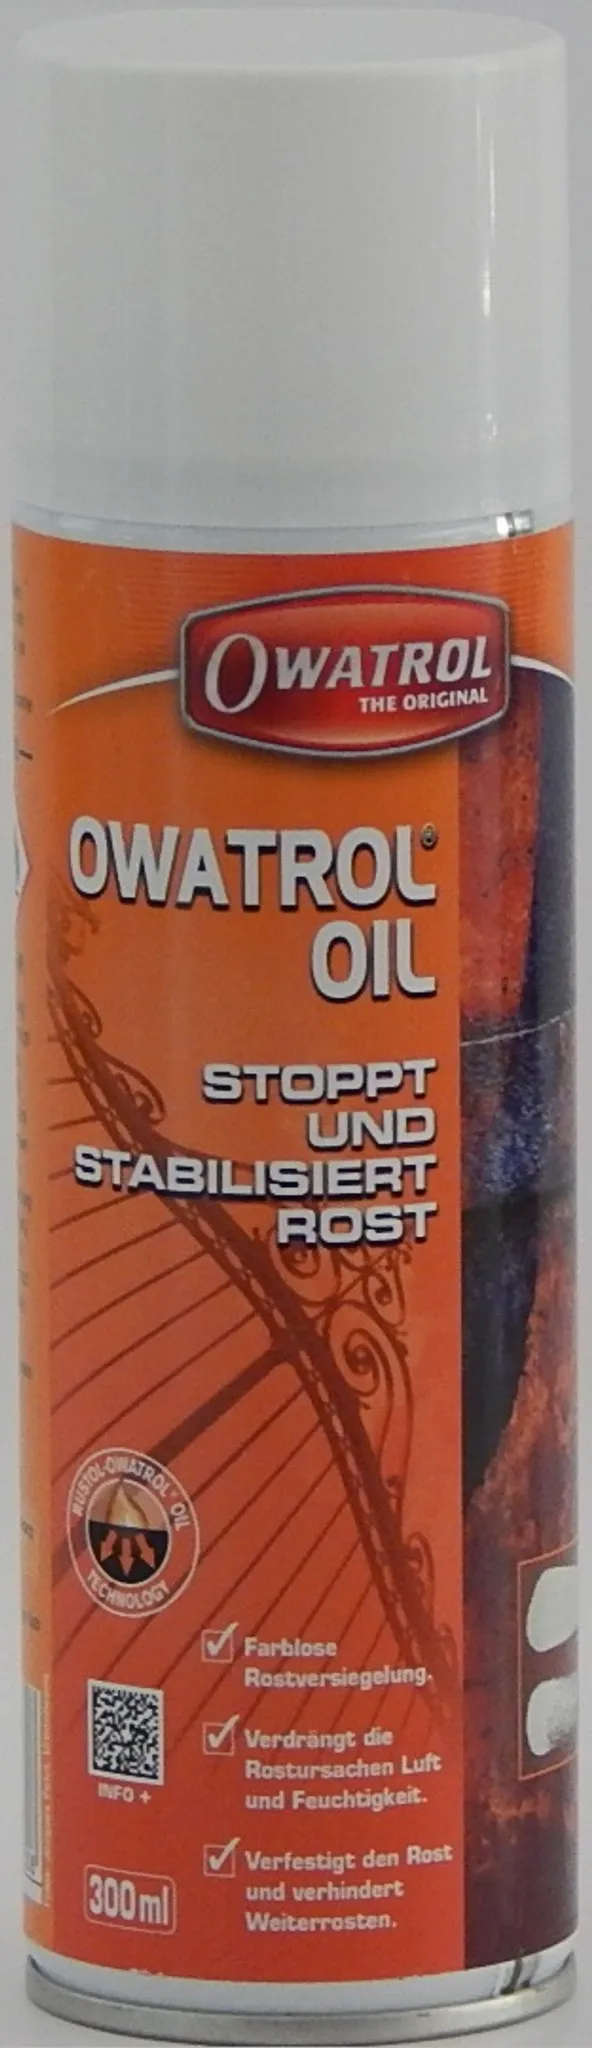 Owatrol Öl, Rostversiegelung - 1Liter